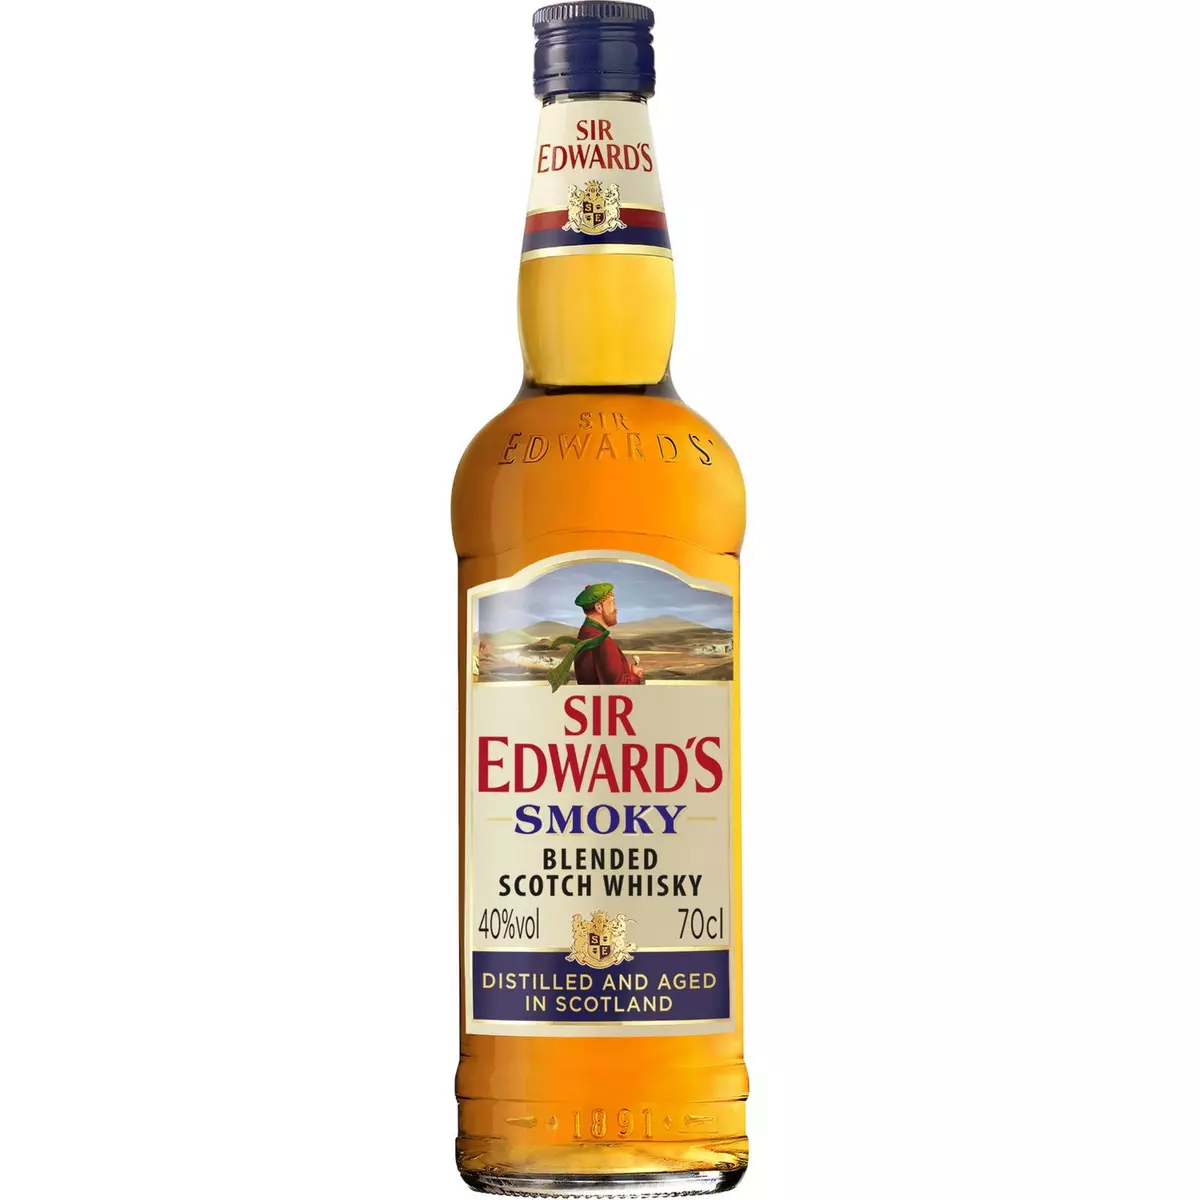 SIR EDWARD'S Sir Edward’s Smoky, c’est une nouvelle expérience, et une profonde authenticité. Un assemblage subtil de whiskies de grain et de malt, enrichi de malt tourbé. Une initiation au goût typique des whiskies tourbés, reflet de la puissante nature écossaise.   70cl